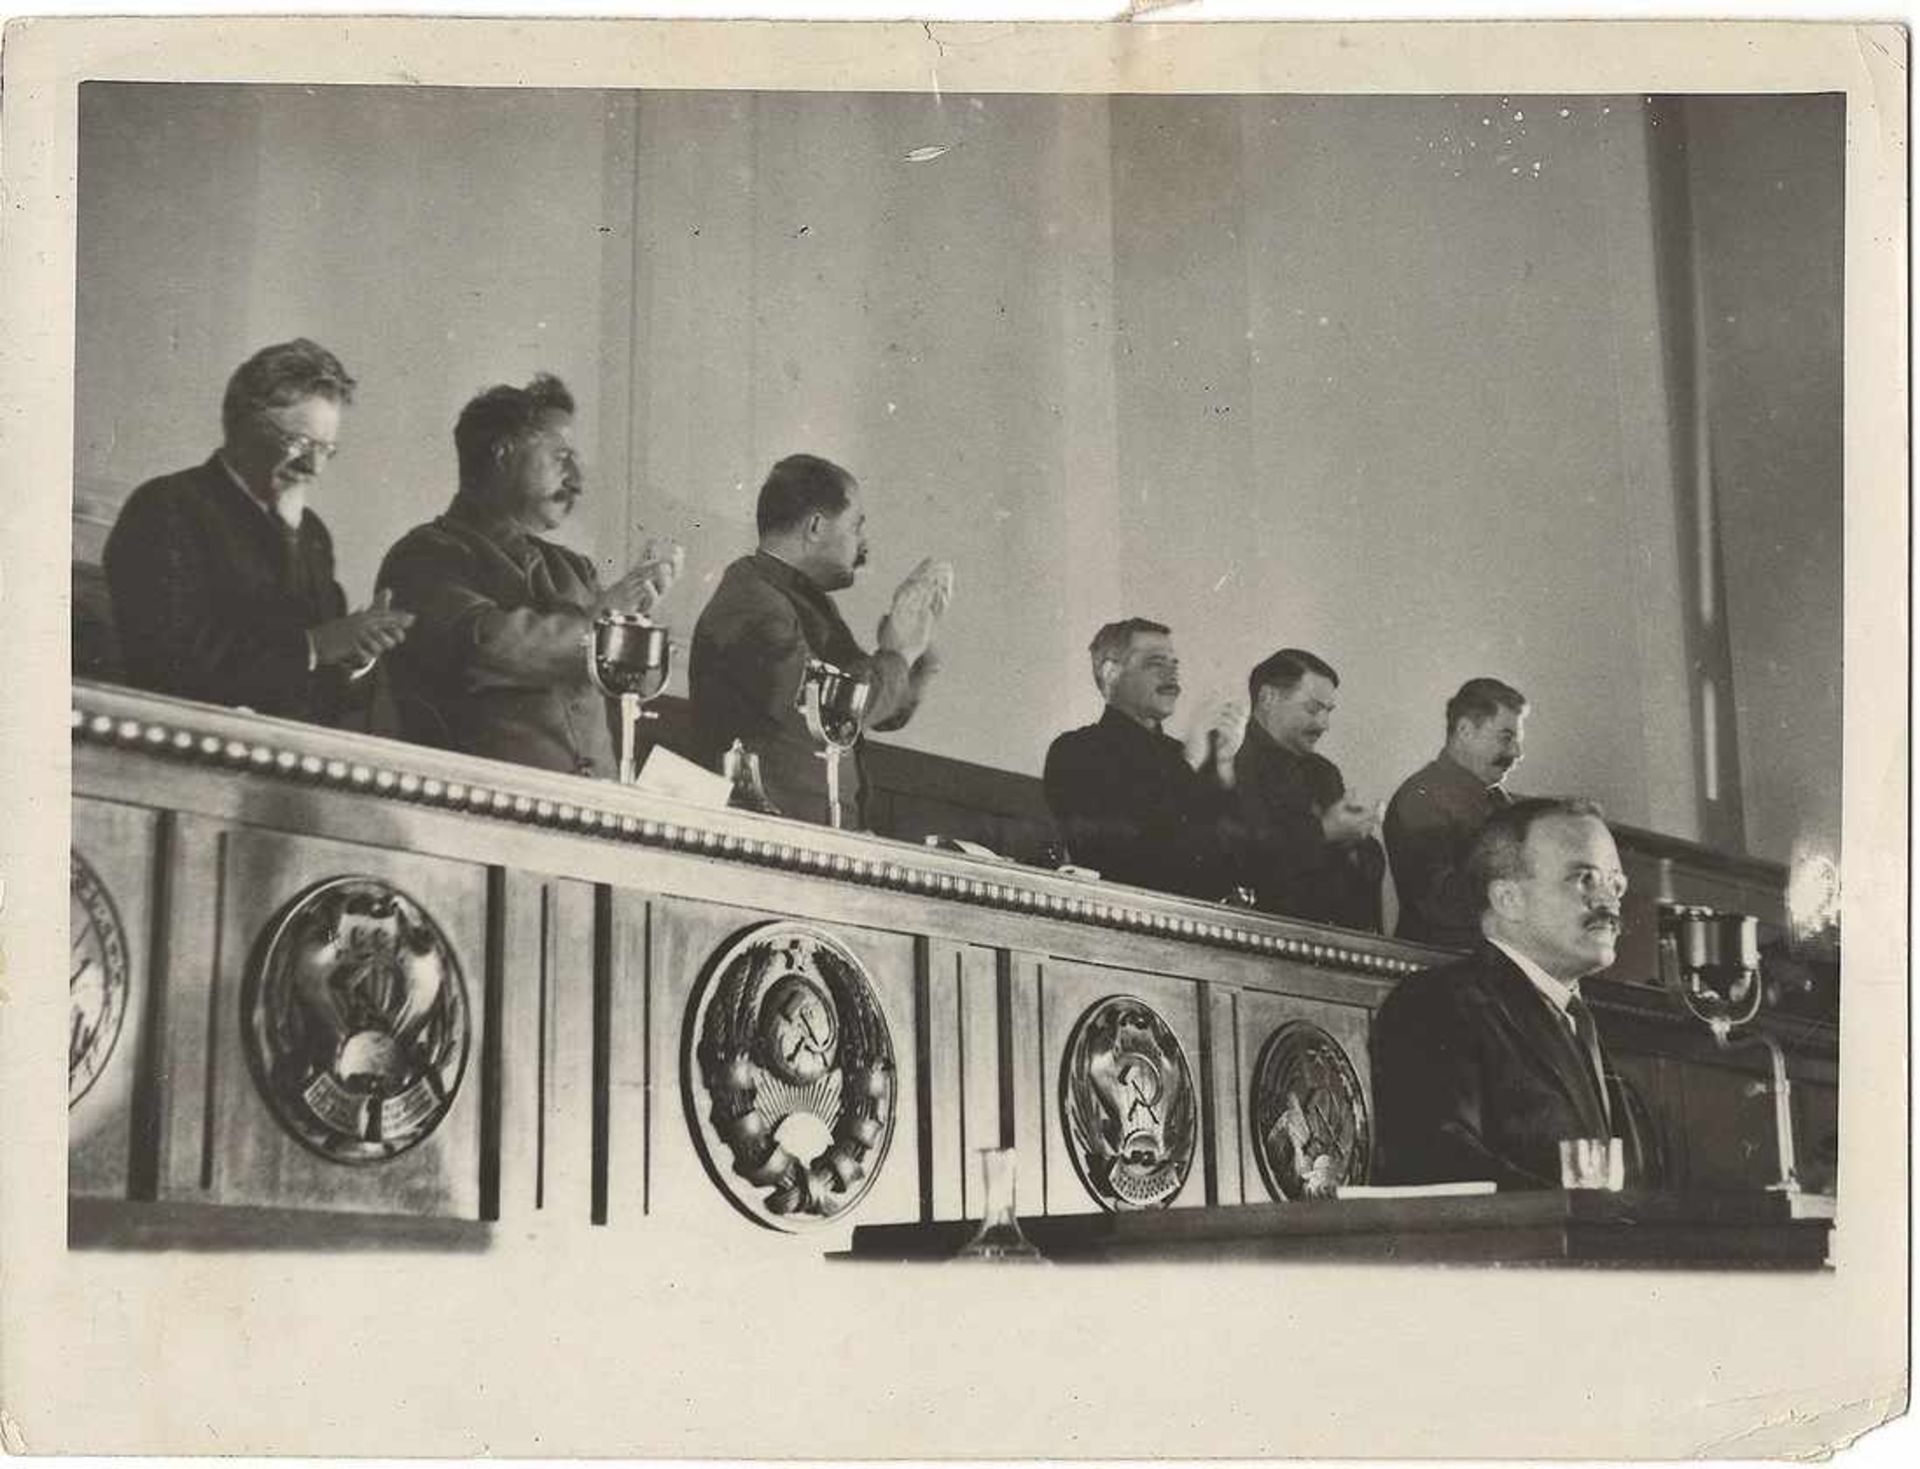 [Soviet]. Photograph "Vyacheslav Molotov, Joseph Stalin. Mikhail Kalinin, Sergo Ordzhonikidze...".